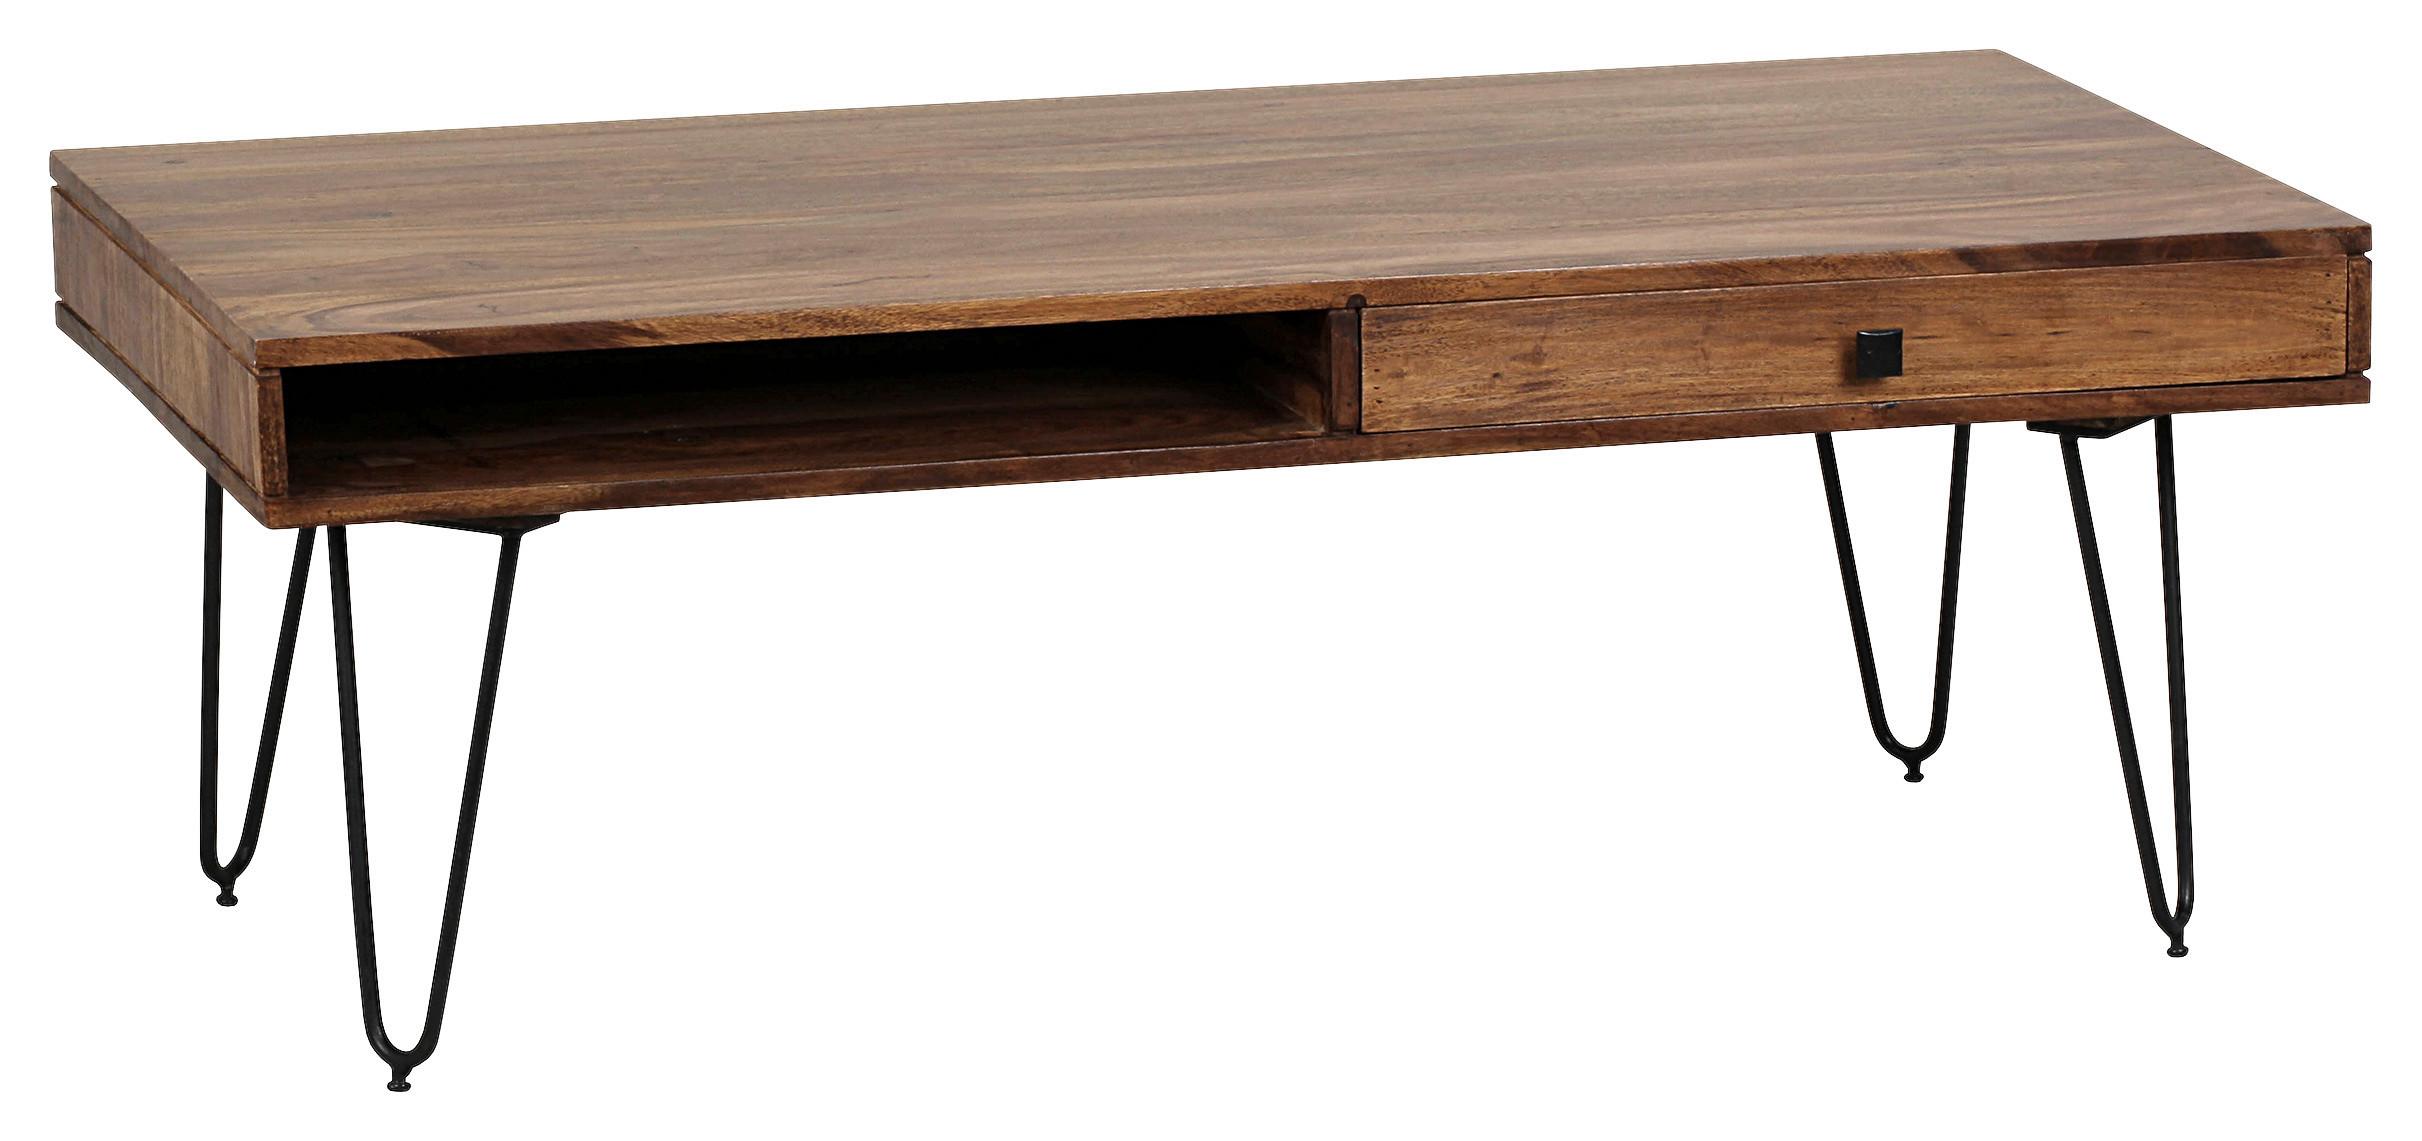 Couchtisch Holz mit Stauraum Bagli, Sheesham/Schwarz - Sheeshamfarben/Schwarz, Design, Holz/Metall (117/60/43cm) - MID.YOU